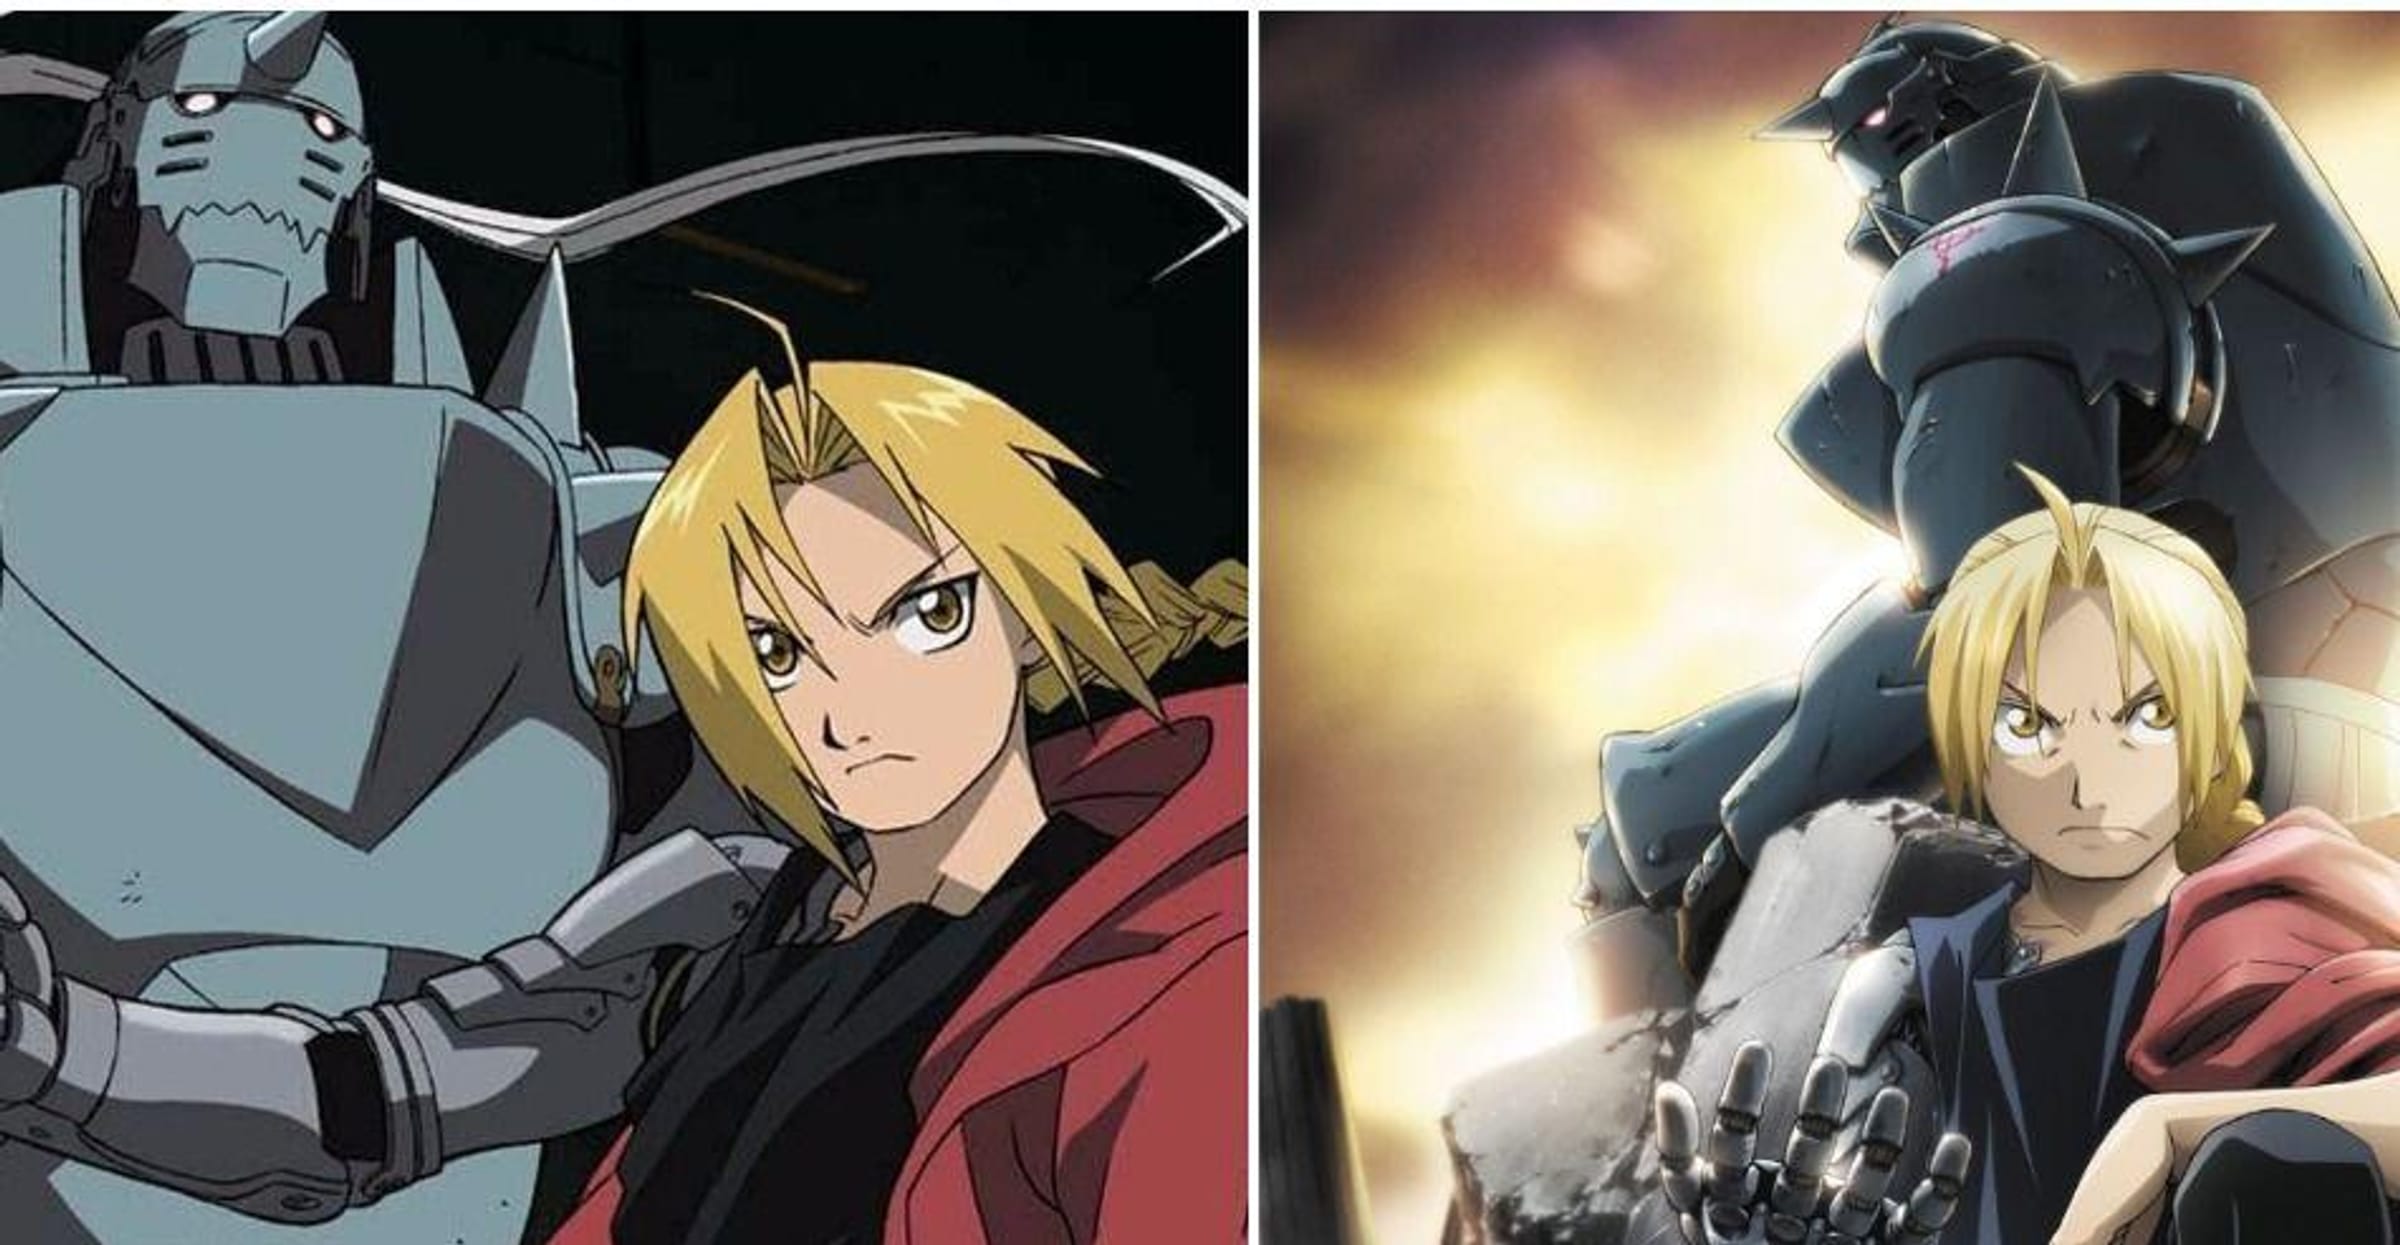 FMA Fullmetal alchemist ed Edward Elric 2003 / first anime style